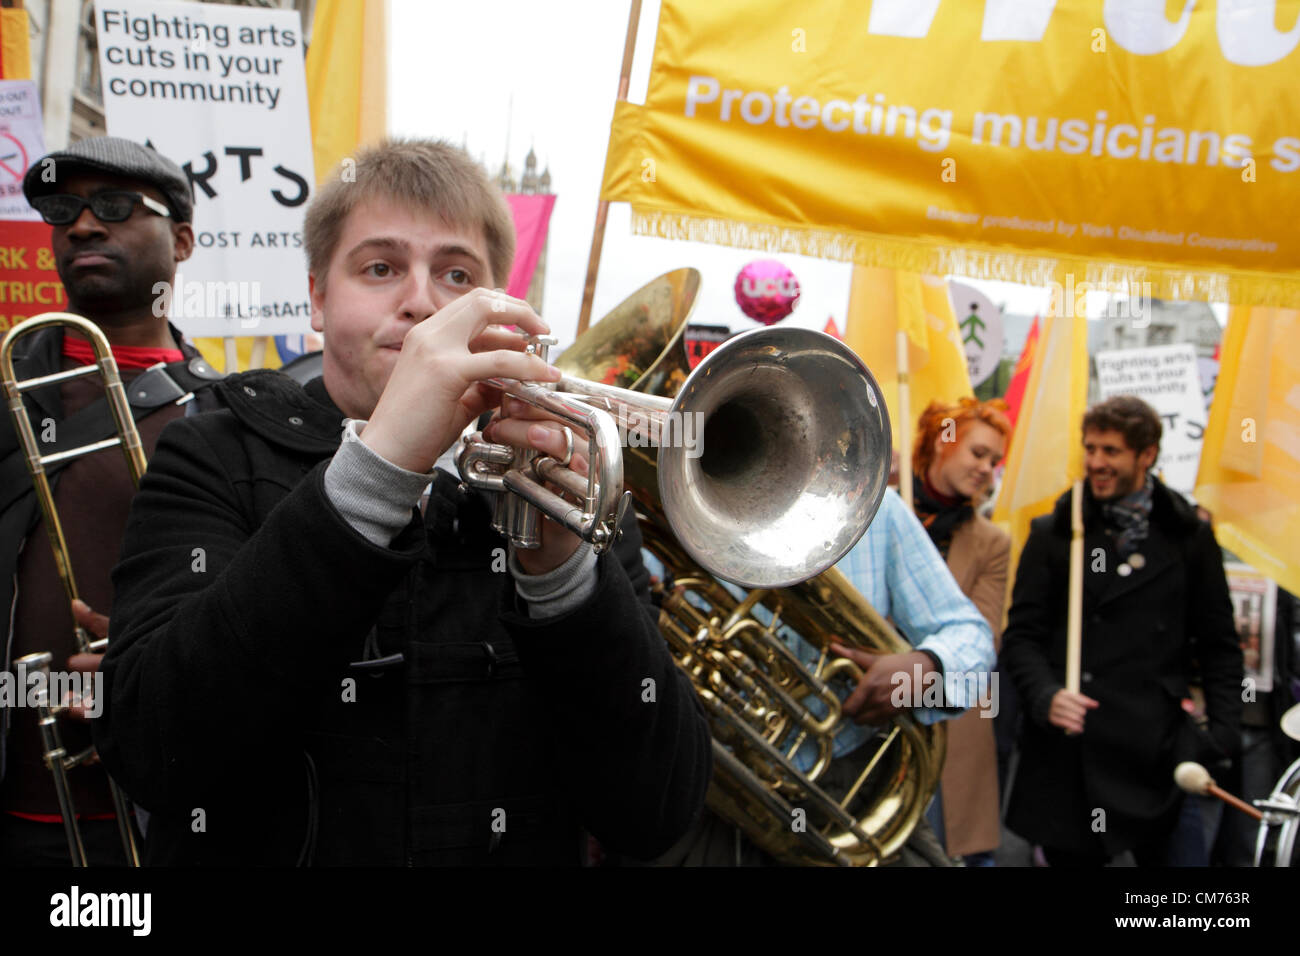 Les membres du Syndicat des musiciens prennent part à la TUC mars anti-austérité. Londres, Royaume-Uni. 20 octobre 2012. Banque D'Images